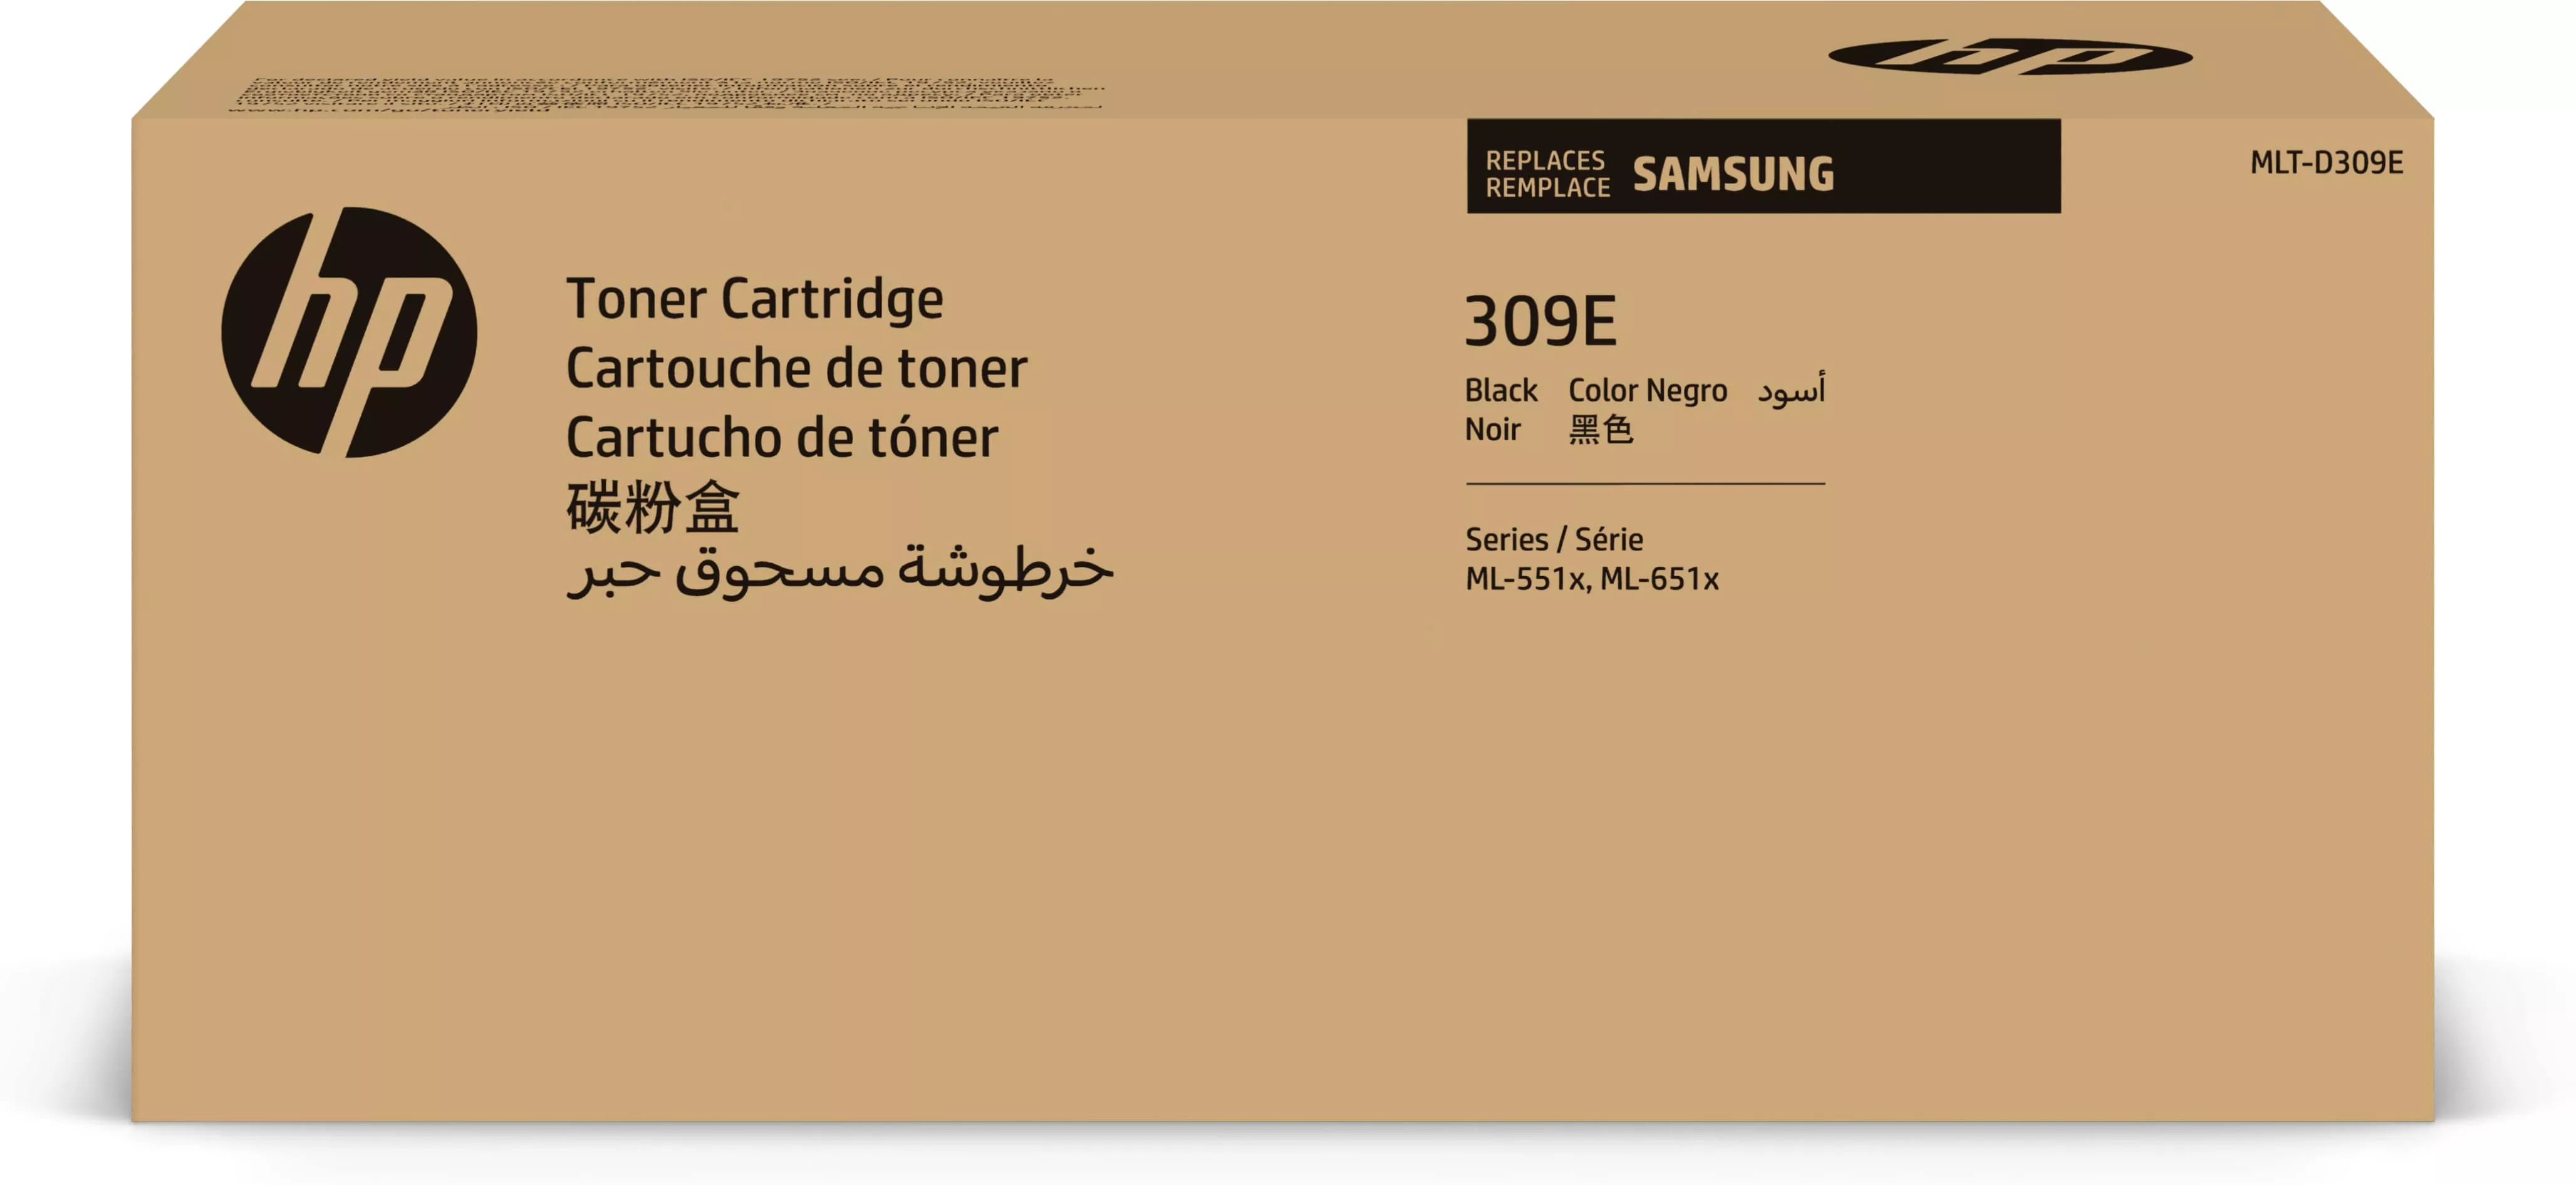 Achat Toner HP Cartouche de toner noir très grande capacité Samsung